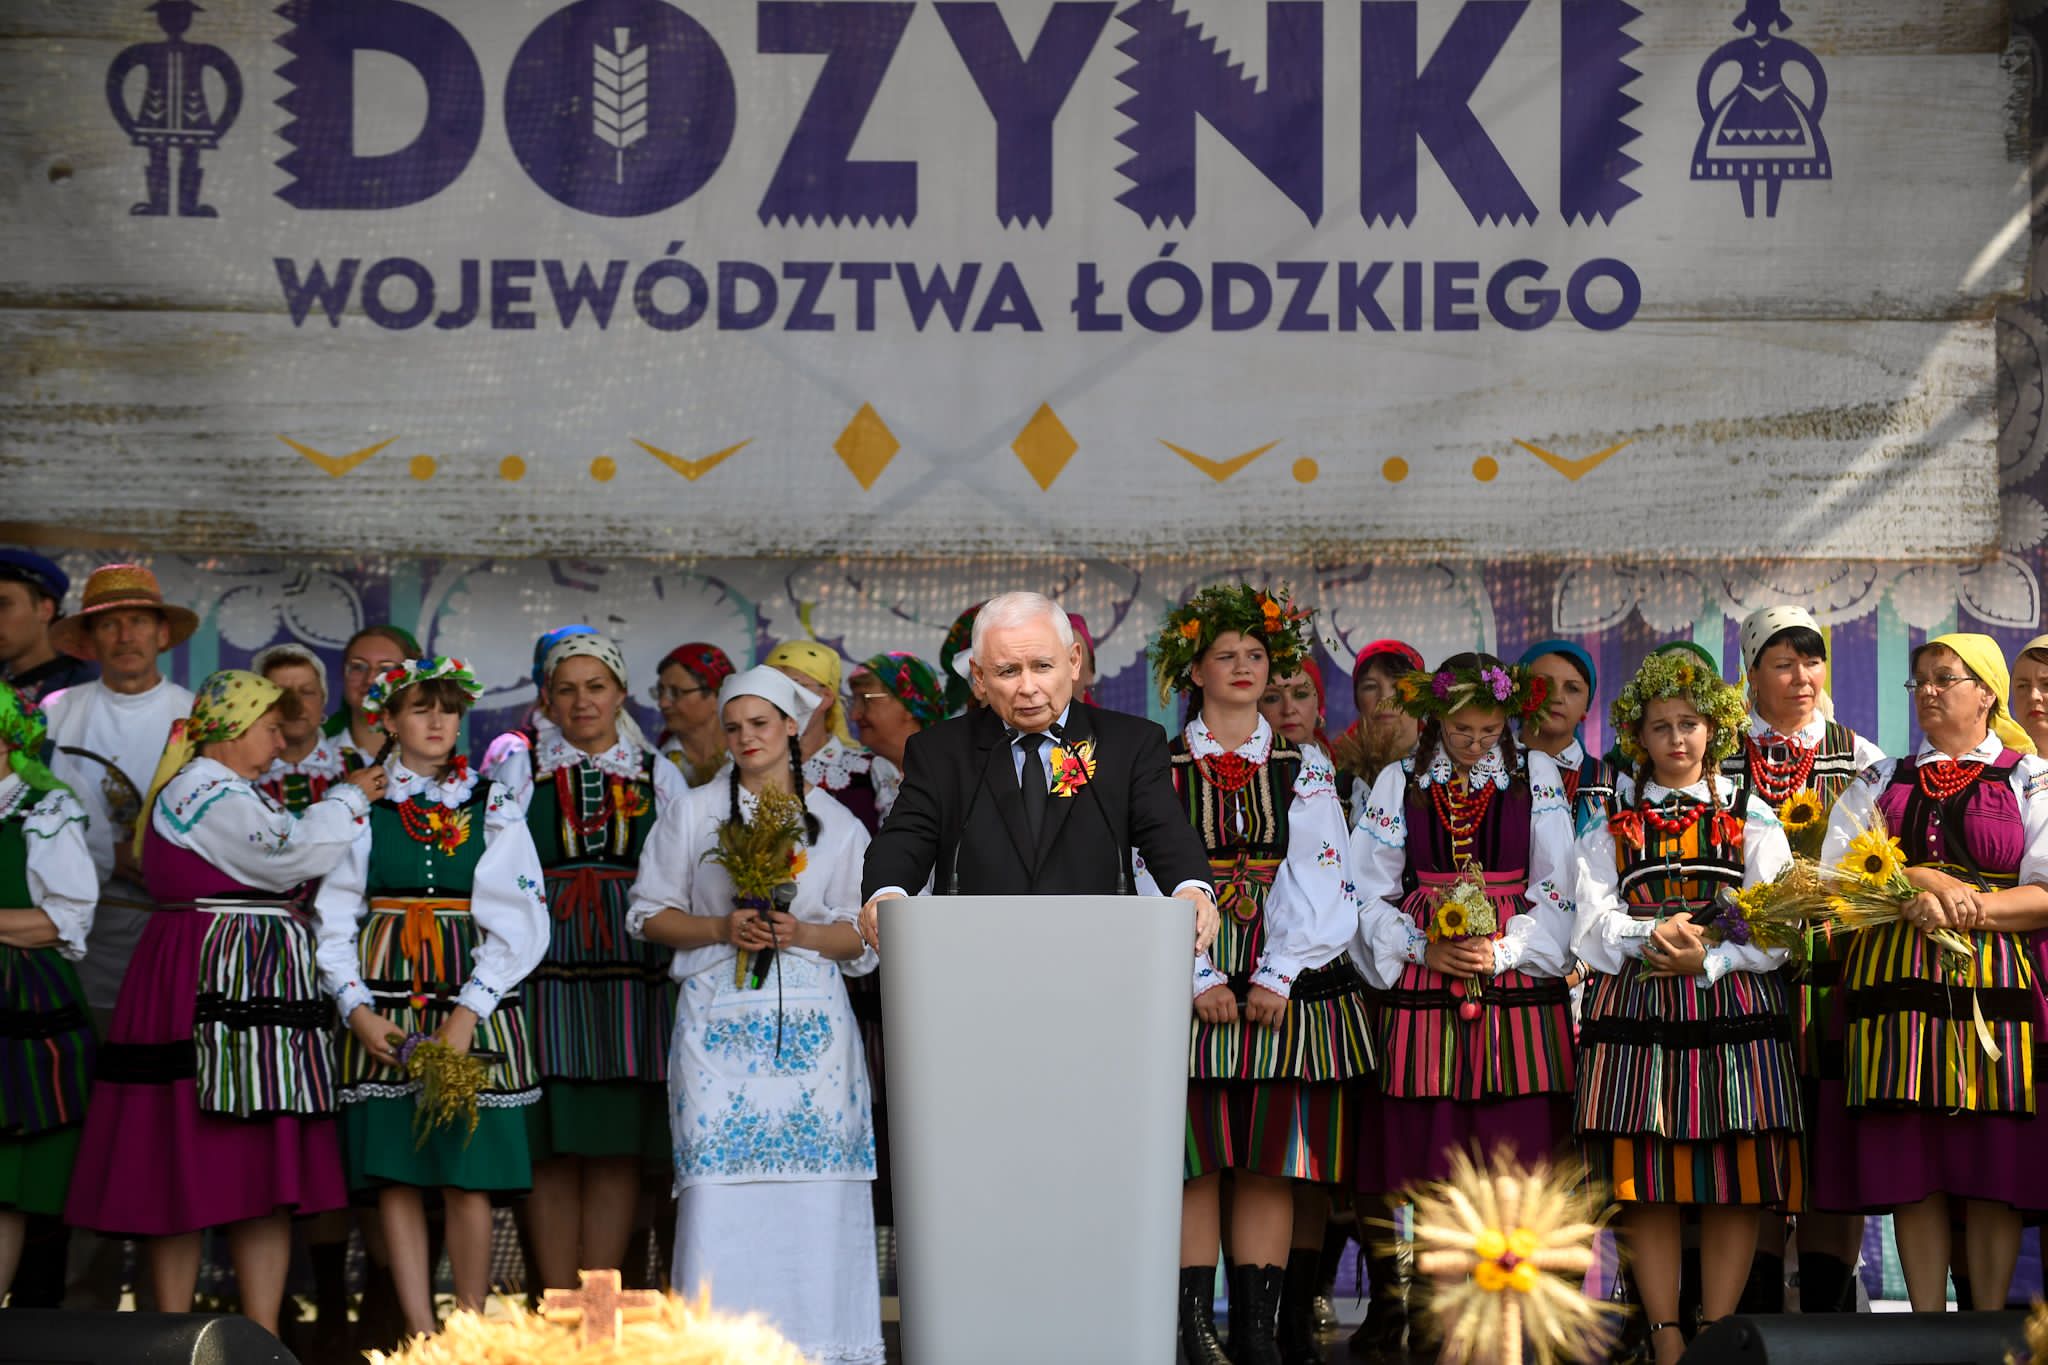 Ogłosił to dziś premier Jarosław Kaczyński prezes Prawa i Sprawiedliwości podczas Dożynek Województwa Łódzkiego w Paradyżu. Ta doskonała informacja z pewnością ucieszy naszych seniorów.